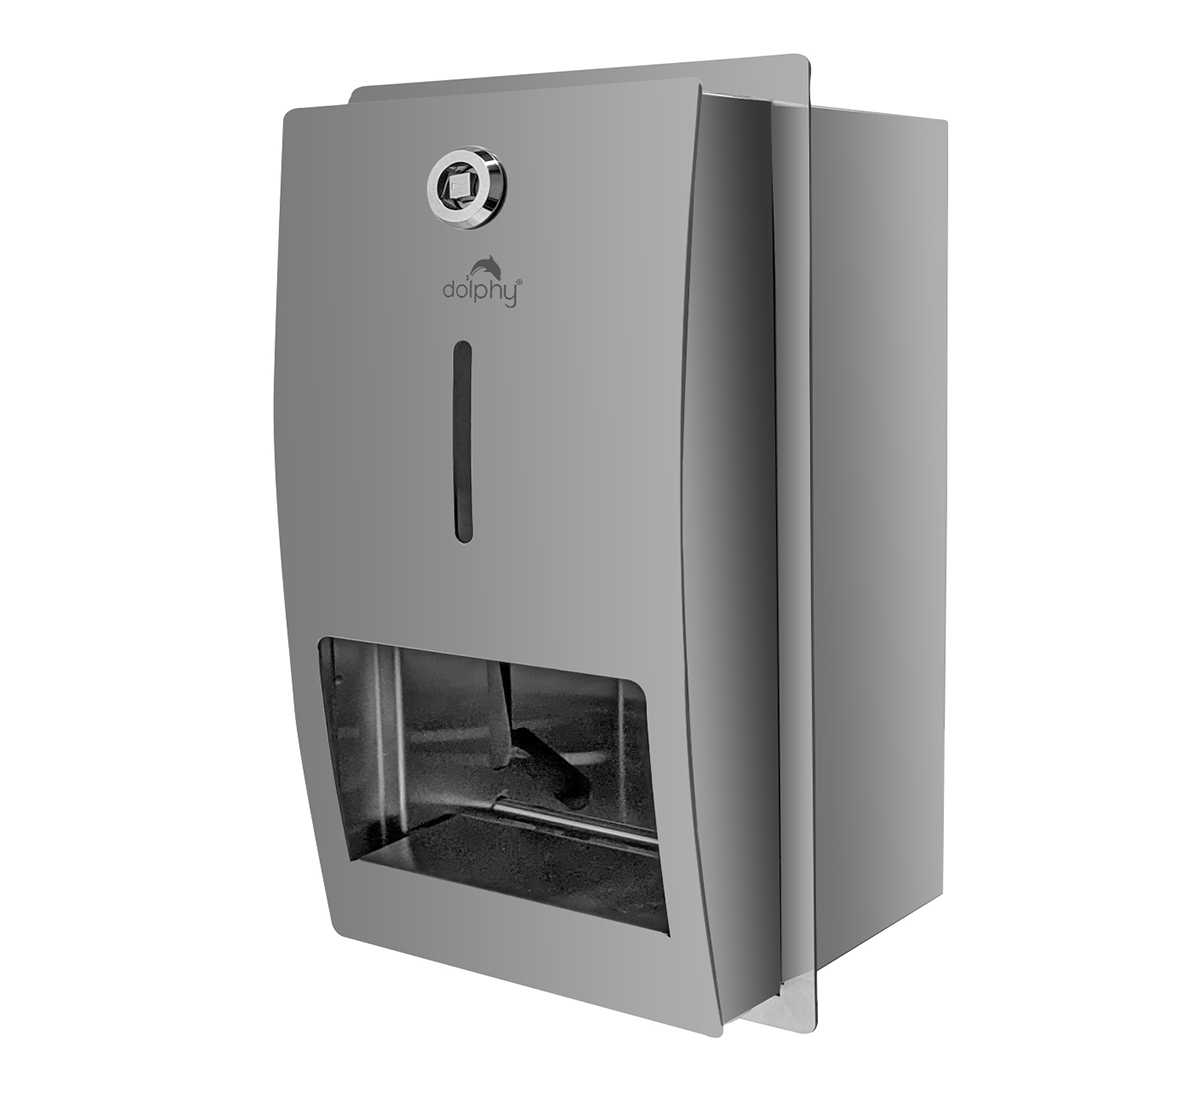 304 Stainless Steel Toilet Paper Dispenser
